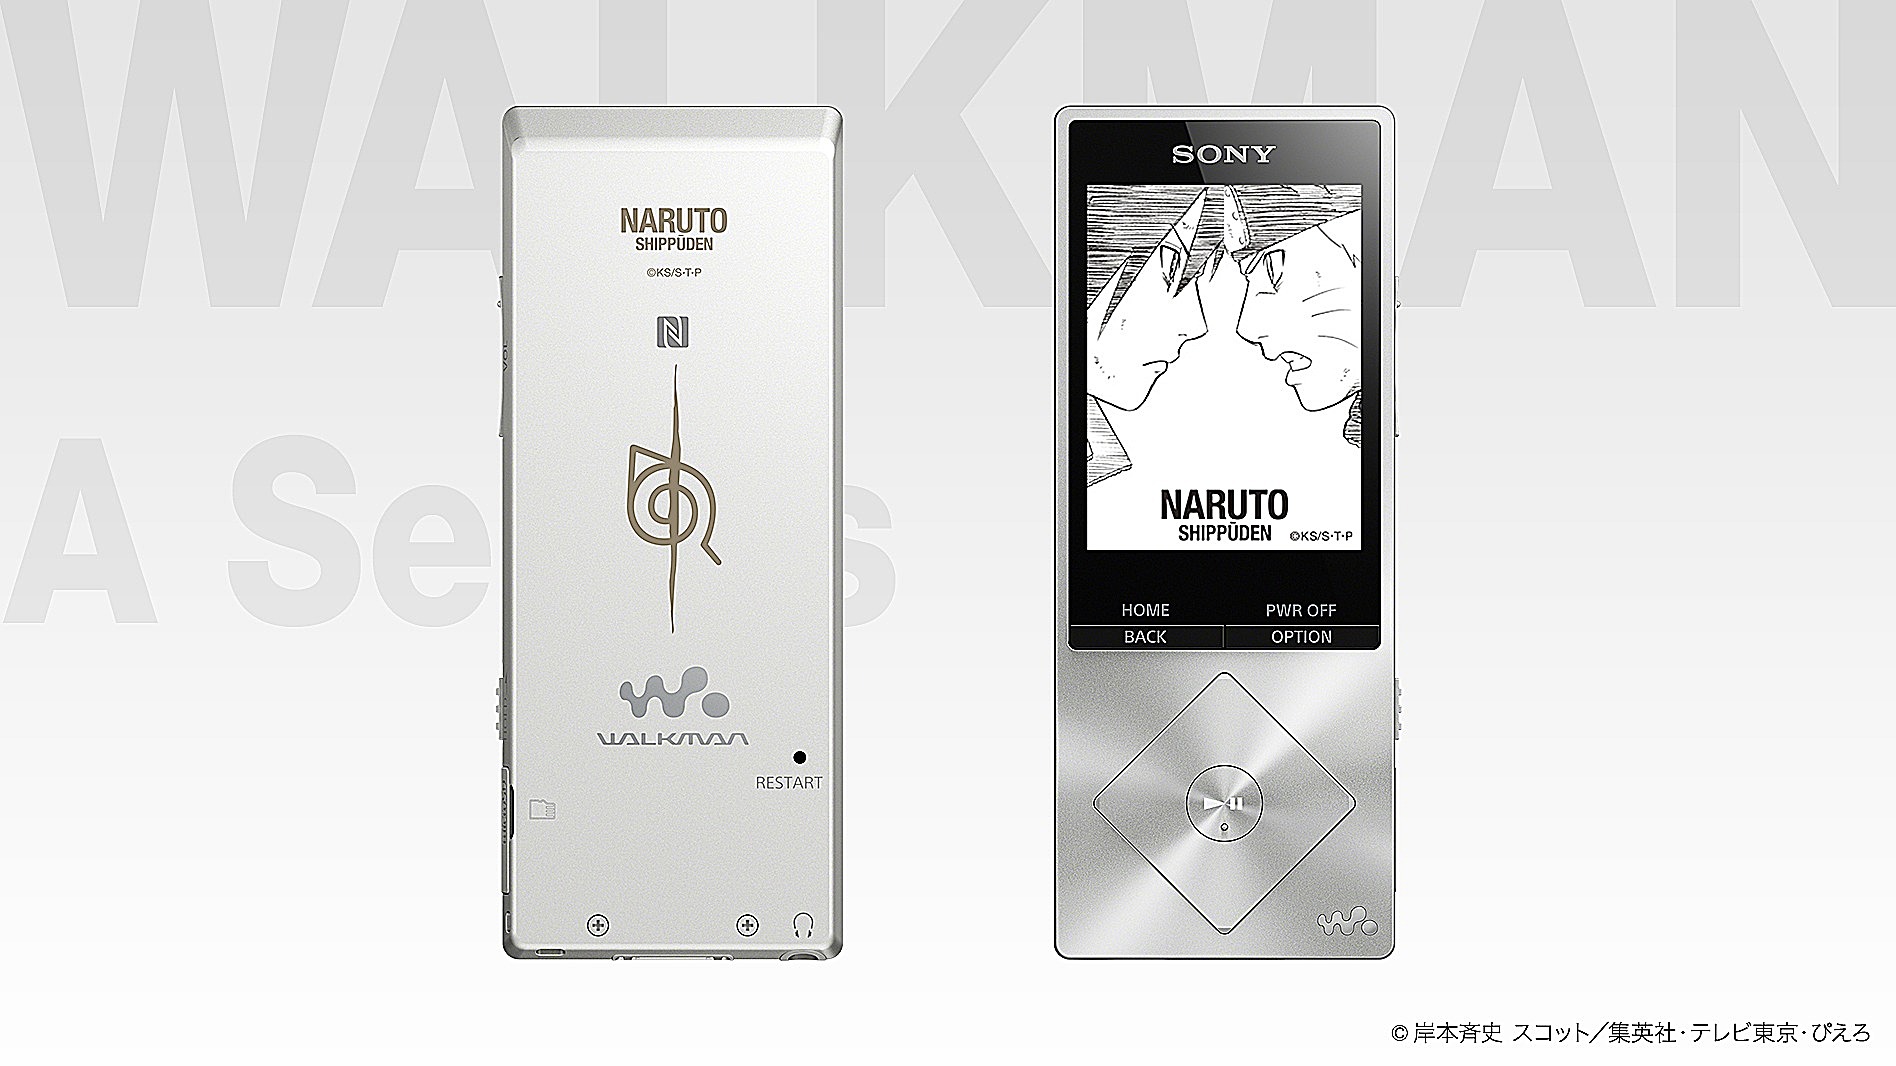 Sony ra mắt bộ đôi Walkman và tai nghe dành riêng cho fan Naruto